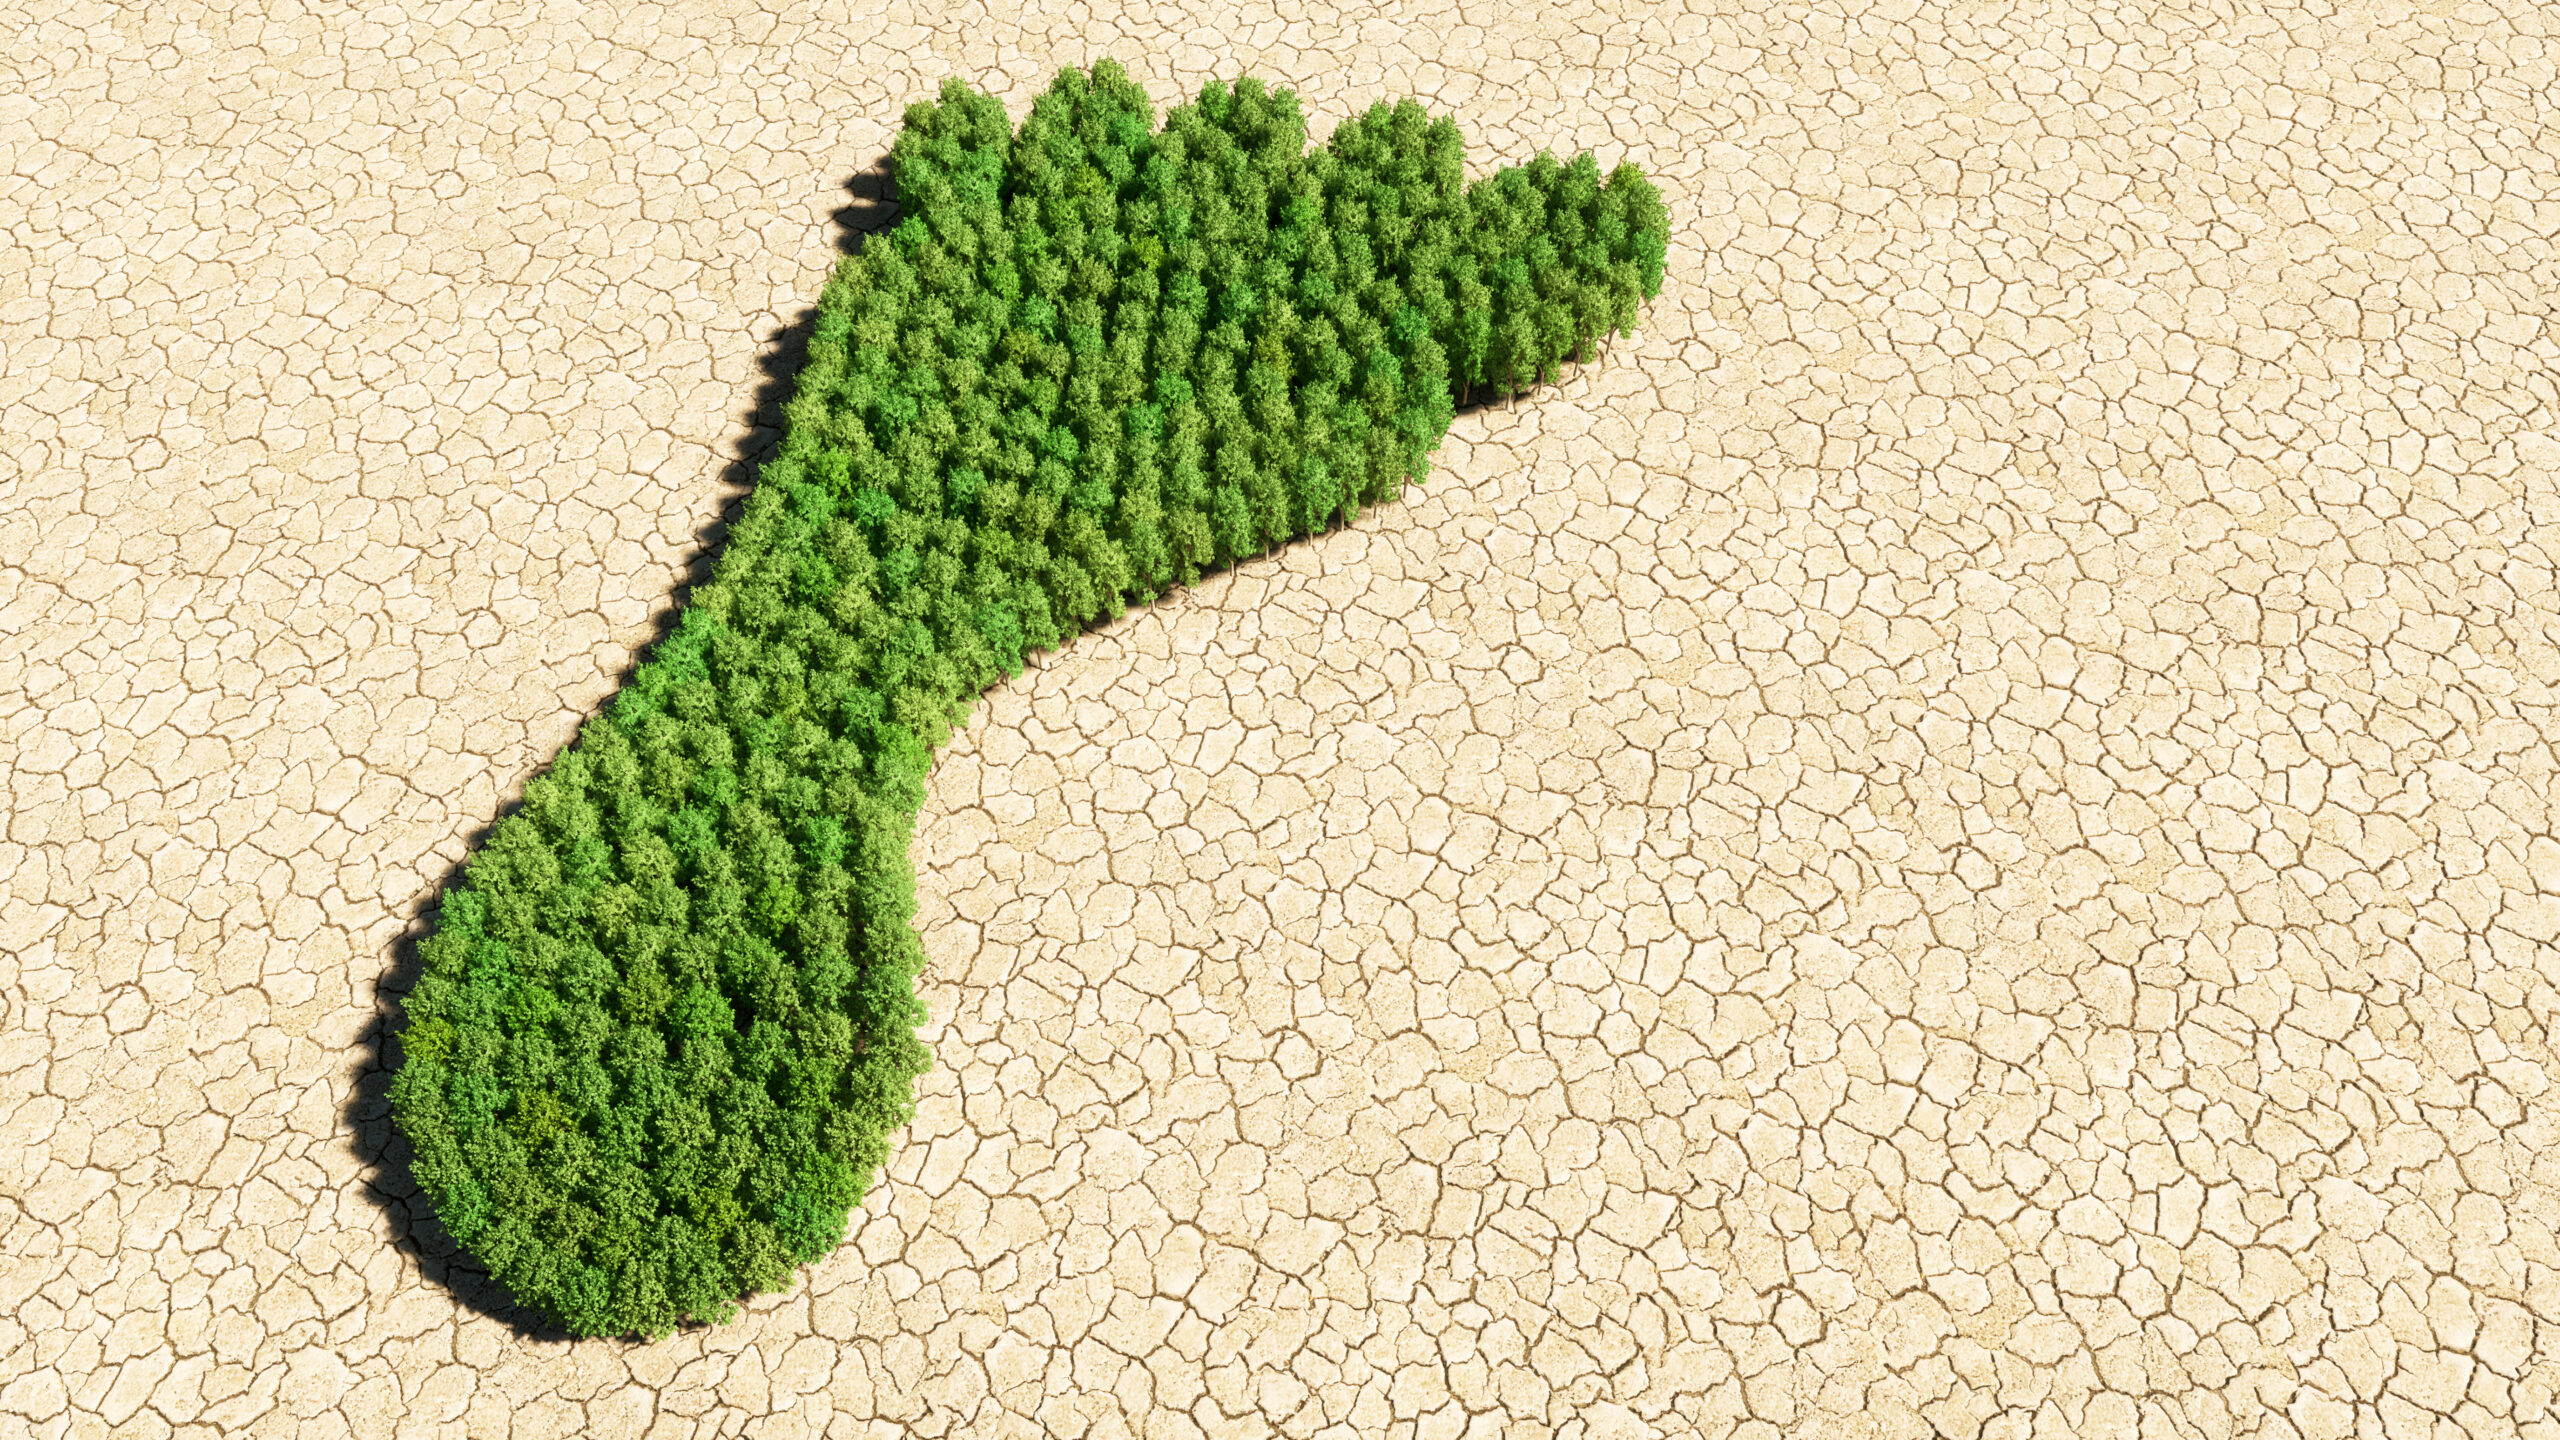 Carbon footprinting